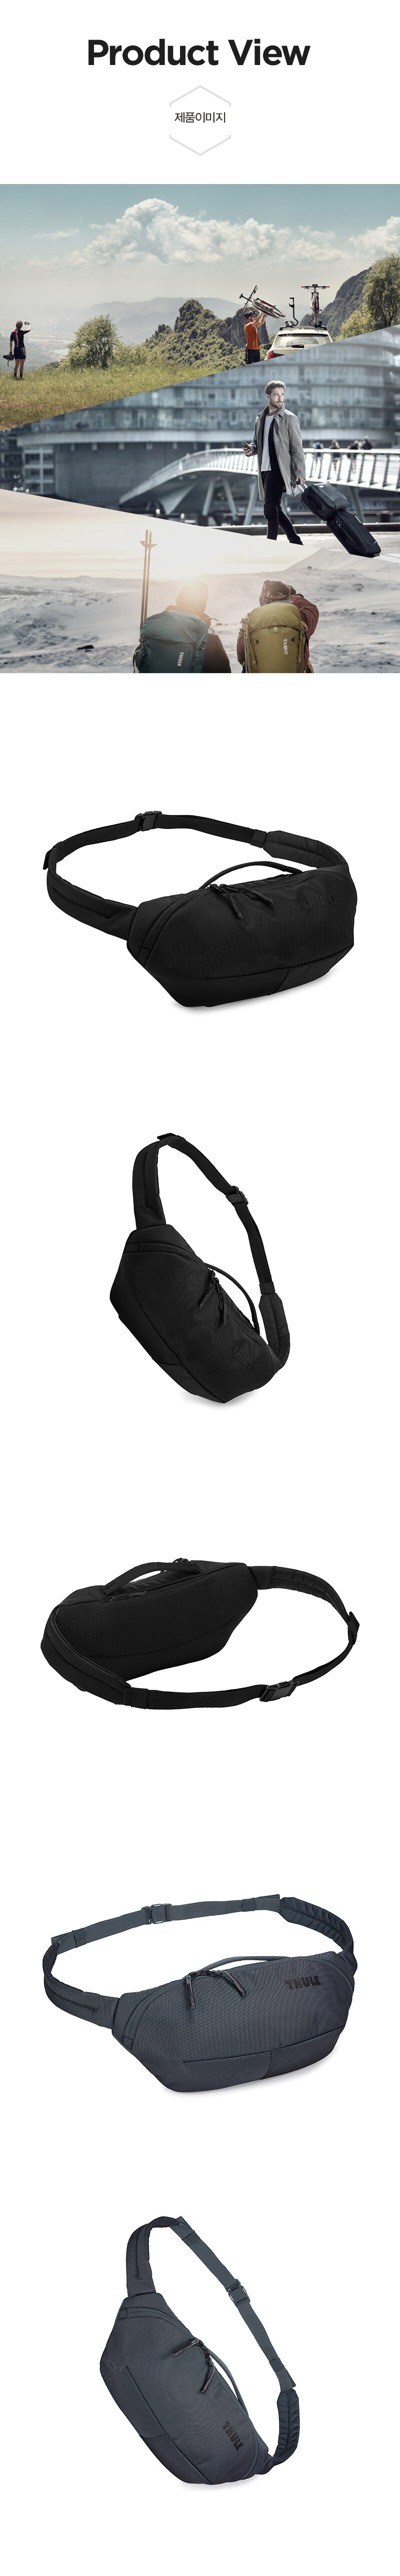 sling-bag-03.jpg